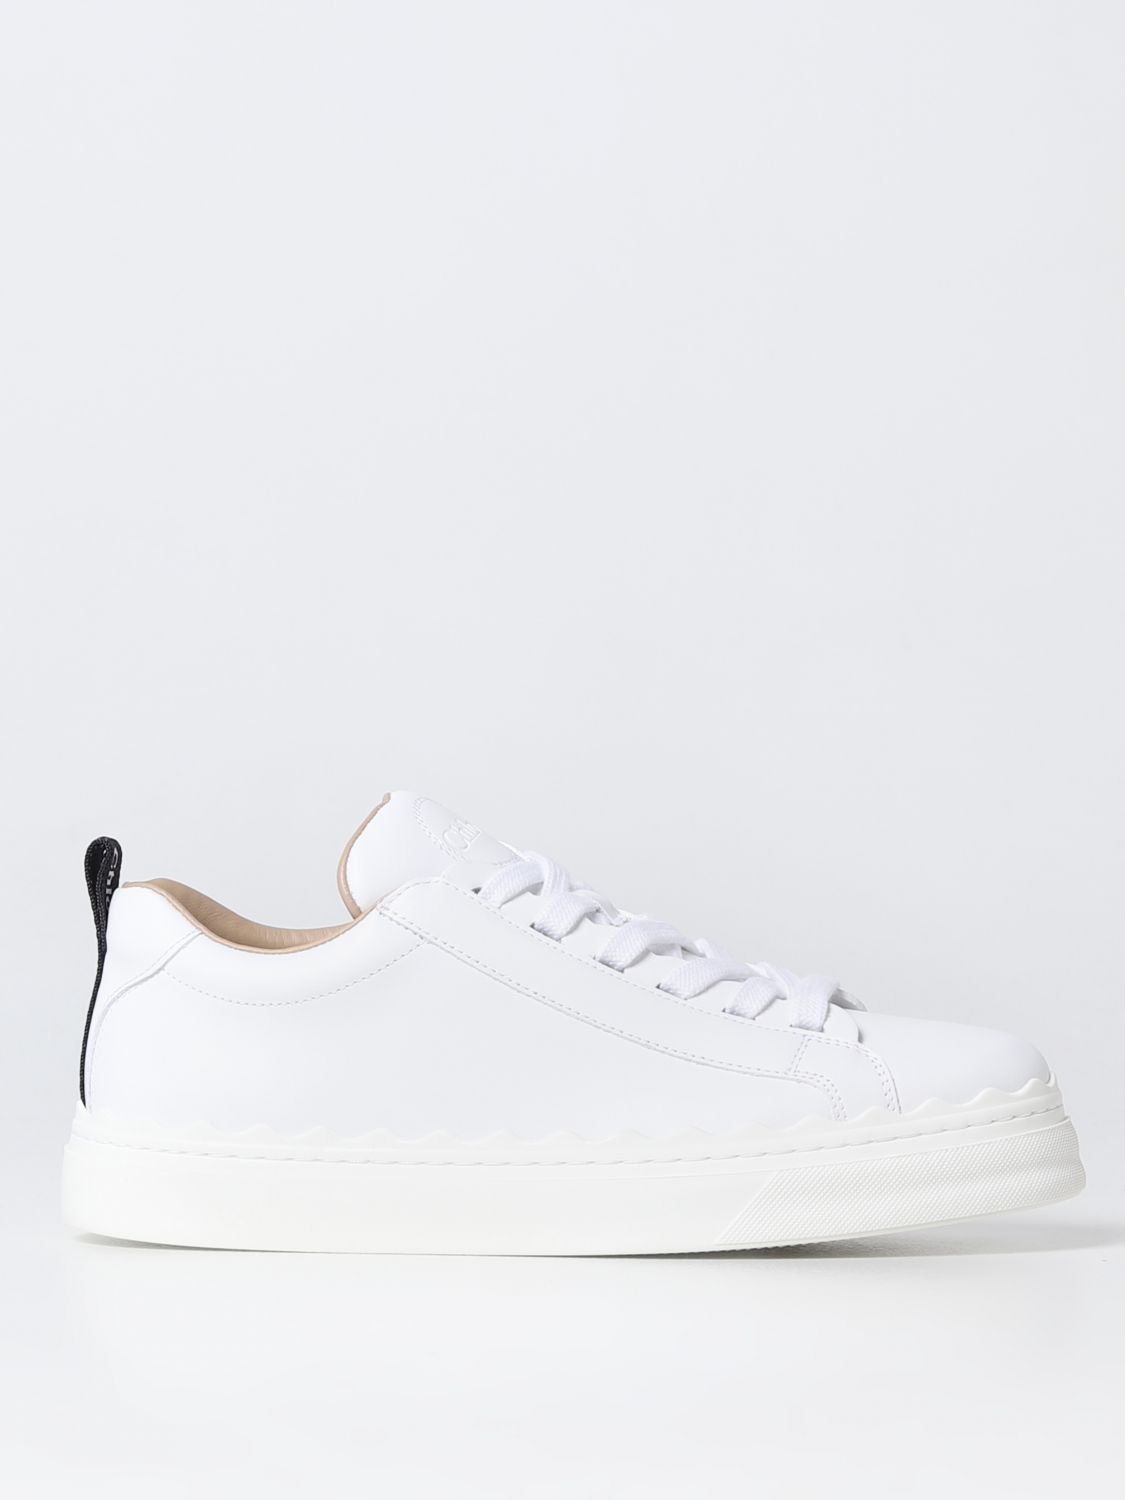 Chloé Chloe' 白色女士运动鞋 C19s10842_101 In White